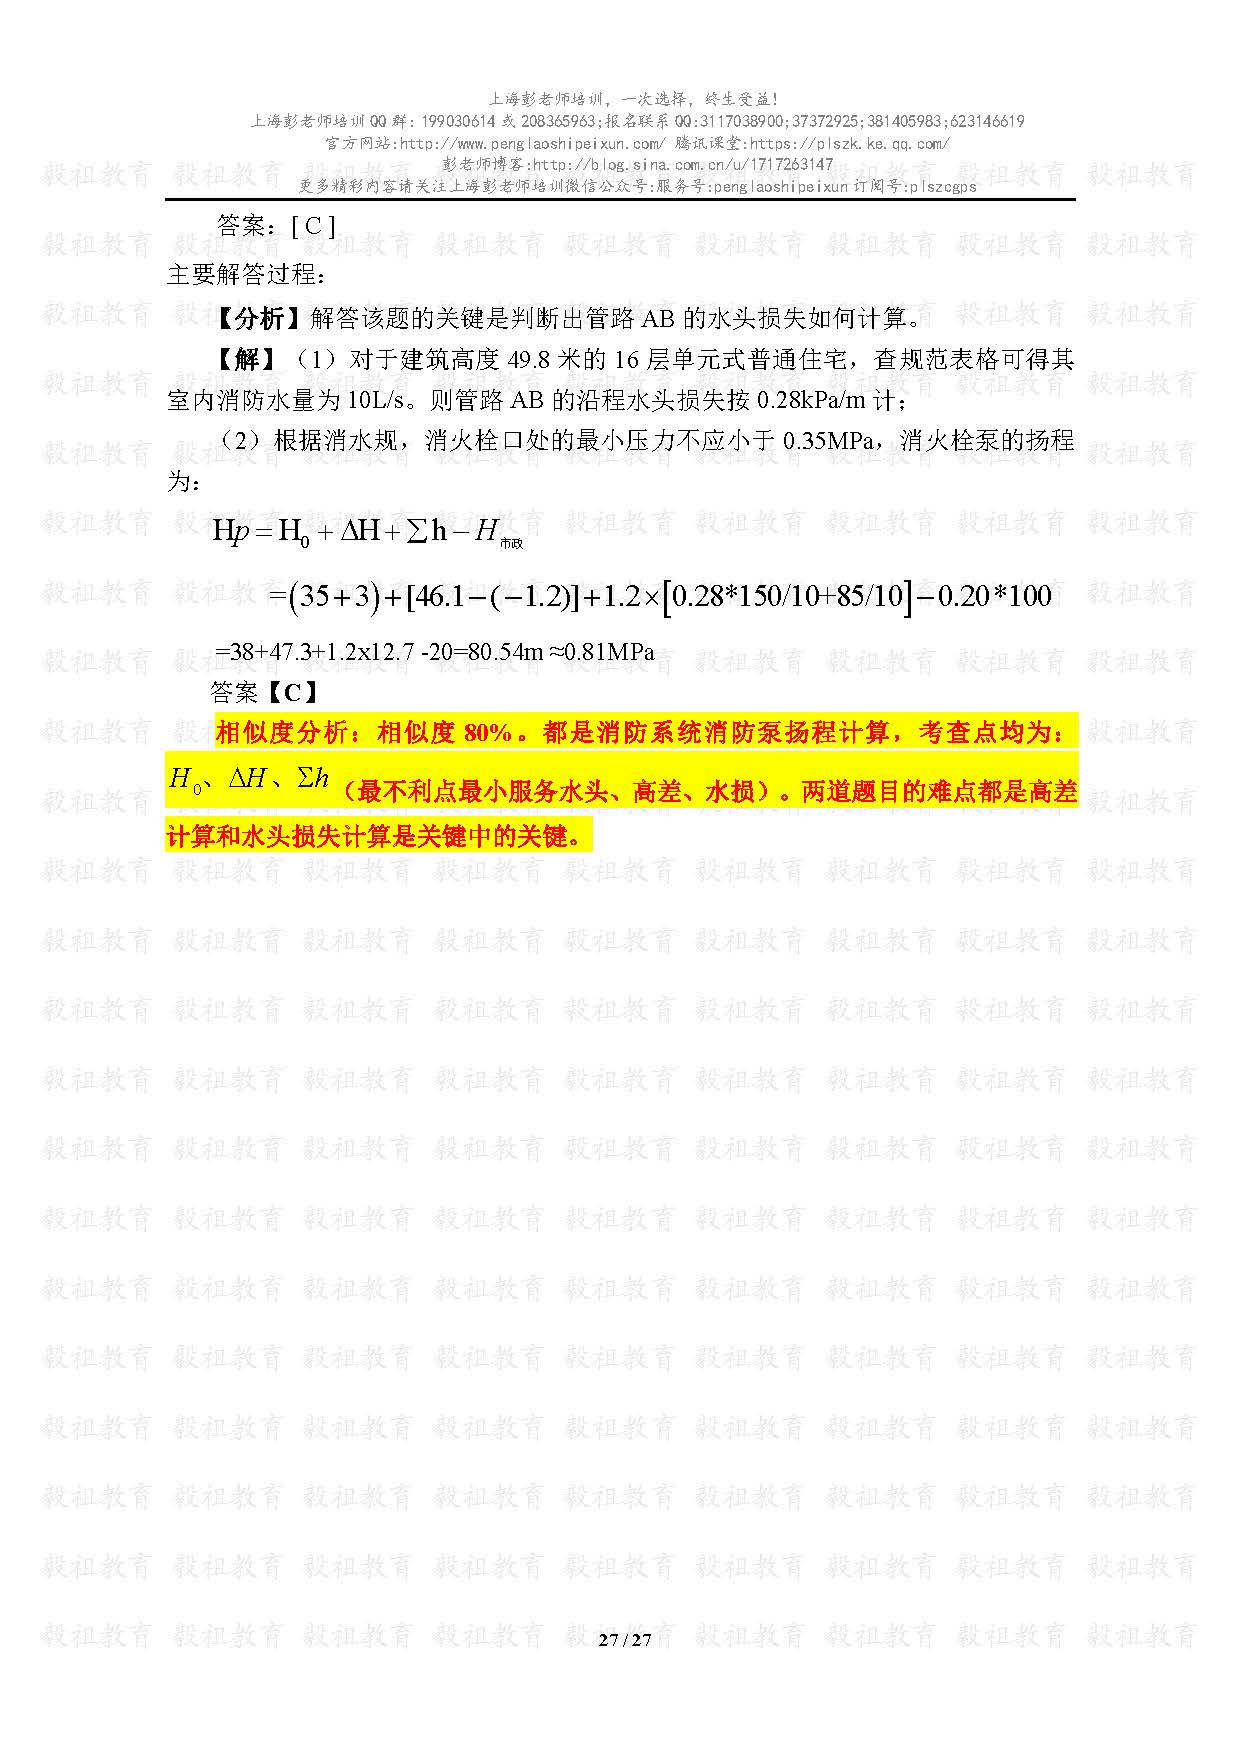 2020注册给排水考试真题与模考题相似度分析-上海彭老师培训_页面_27.jpg.jpg